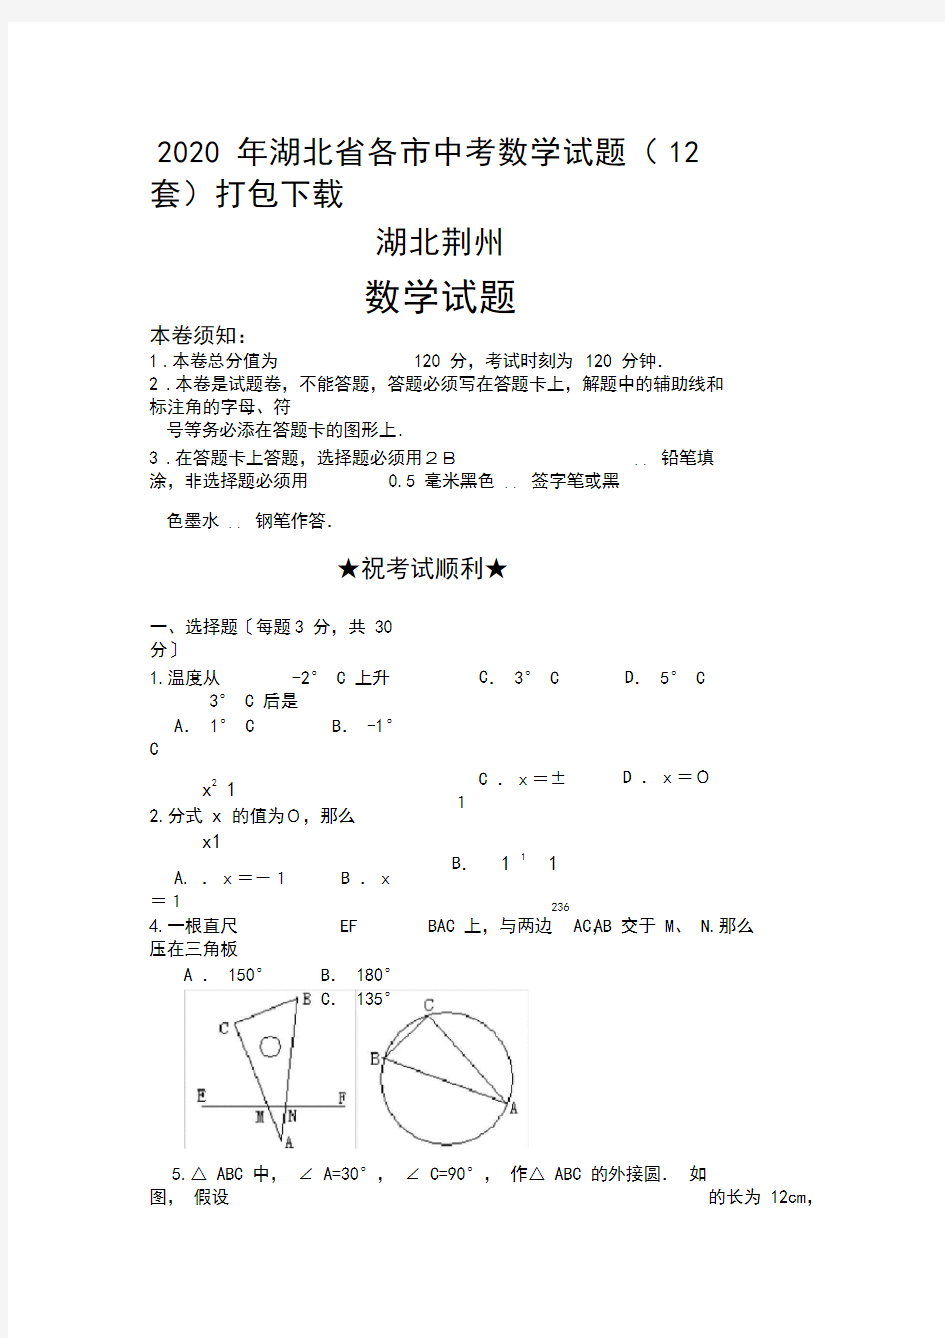 2020年湖北省各市中考数学试题(12套)打包下载湖北荆州